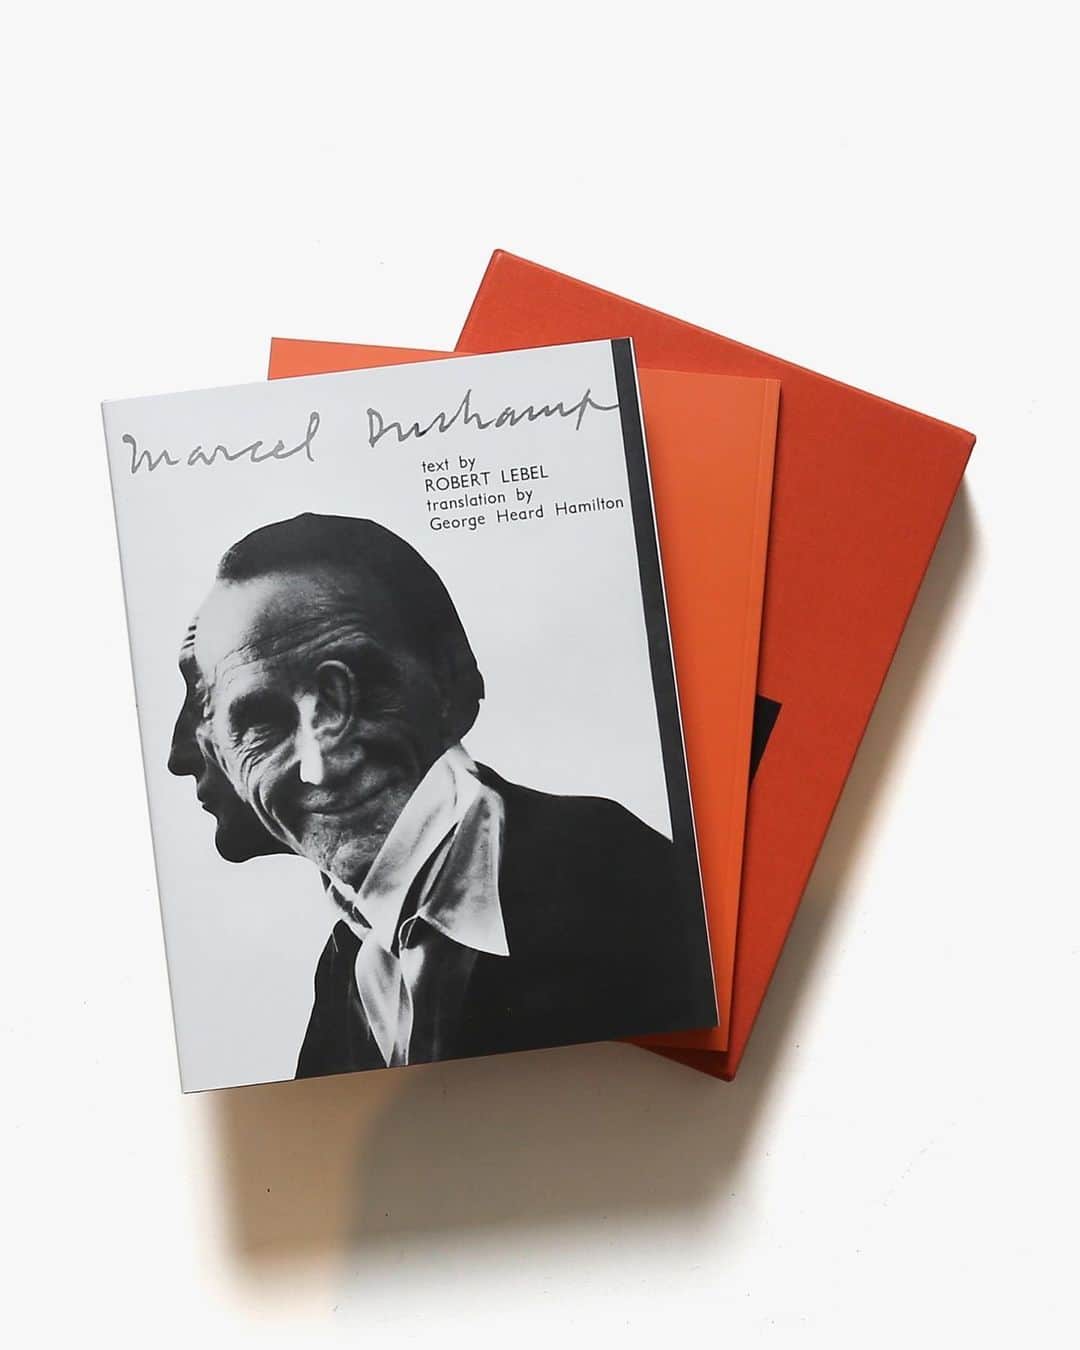 nostos booksさんのインスタグラム写真 - (nostos booksInstagram)「本日はアンディ・ウォーホルの初期作品集、モランディやマティスの画集、『川合玉堂写生帖』、アンドリュー・ワイエス展図録など47冊を入荷しました。  オンラインストアへは商品タグをタップ◯ 　 入荷本からおすすめ10選  ----------  1冊目 『Pre-Pop Warhol』 アメリカの画家・版画家・芸術家でありポップアートの旗手として知られる、アンディ・ウォーホルの初期作品集。1948年から1957年までに制作されたドローイング作品やレコードジャケッド、グリーティングカードなどをカラーで79点掲載。   ----------  2冊目 『Giorgio Morandi 1890-1964』 イタリアの画家、ジョルジョ・モランディの作品集。1890年から1964年にかけて発表された、静物画を中心に、ランドスケープ、ポートレートなどのペインティング作品をカラーで多数収録。   ----------  3冊目 『Matisse: The Red Studio』 20世紀を代表する芸術家の一人、アンリ・マティスの資料集。1909年に自身のアトリエを描いた室内風景画「The Red Studio（赤いアトリエ）」を軸に、関連する作品や制作背景、作品の所有の歴史など、豊富なアーカイブ資料を掲載し画期的なリサーチをまとめあげている。  ----------  4冊目 『Marcel Duchamp』 1959年に出版されたマルセル・デュシャンの歴史的な画集を復刻した一冊。現代フランス美術を専門とする美術史家、ロベール・ルベルの膨大なテキストと記録写真、デュシャンの作品図版を組み合わせることで、デュシャンの人生とその周辺を複雑かつ個人的に描き出している。  ----------  5冊目 『Matthew Wong: Blue View』 カナダの画家、マシュー・ウォンの作品集。2017年から2019年にかけて制作されたウォンの青を基調とした絵画シリーズから、親密な室内風景や甘美な夜景を描いた、深い喚起力を持つペインティングを60点以上収録。   ----------  6冊目 『Stanley Donwood: There Will Be No Quiet』 Radioheadのアルバムのジャケットやポスターなどのアートワークを手掛けるイギリス出身のビジュアルアーティスト、スタンリー・ドンウッドの作品集。23年間にわたって多くの作品を生み出してきた自身のノートや写真、スケッチなどから完成までの道のりなどを辿る。トム・ヨークによる解説、未公開資料も掲載。  ----------  7冊目 『川合玉堂写生帖 山水編・花鳥編 2冊セット』 明治・大正・昭和の時代を生きた近代日本画家、川合玉堂の「花鳥山水」を集めた作品集2冊セット。戦時中疎開先であった奥多摩のスケッチや、花の開いていく様子が詳細に描かれた彼岸櫻など原色、単色の作品を多数収録。  ----------  8冊目 『The Essential Cy Twombly』 戦後最も偉大で特異なアーティストの一人として知られる、サイ・トゥオンブリーの作品集。トゥオンブリーの多様な作品の中から代表的な絵画、ドローイング、彫刻、写真などを紹介。   ----------  9冊目 『Anita Albus: Die The Art of Seeing』 ベストセラー「The Art of Arts」の著者である、イラストレーターで作家のアニタ・アルバスの作品集。綿密な自然調査、そして自作のカラー顔料と高度な技術によって植物や動物の細密画が描かれている。   ----------  10冊目 『Eva Hesse: Oberlin Drawings』 ドイツの彫刻家・画家・現代美術家、エヴァ・ヘスのドローイング作品集。ドローイングやペインティングに彫刻素材を組み合わせる作風は、今日のアートシーンに影響を与え続けている。   ----------  店舗情報はこちら @nostosbooks  ----------  #nostosbooks #ノストスブックス #祖師ヶ谷大蔵 #砧」4月28日 19時33分 - nostosbooks